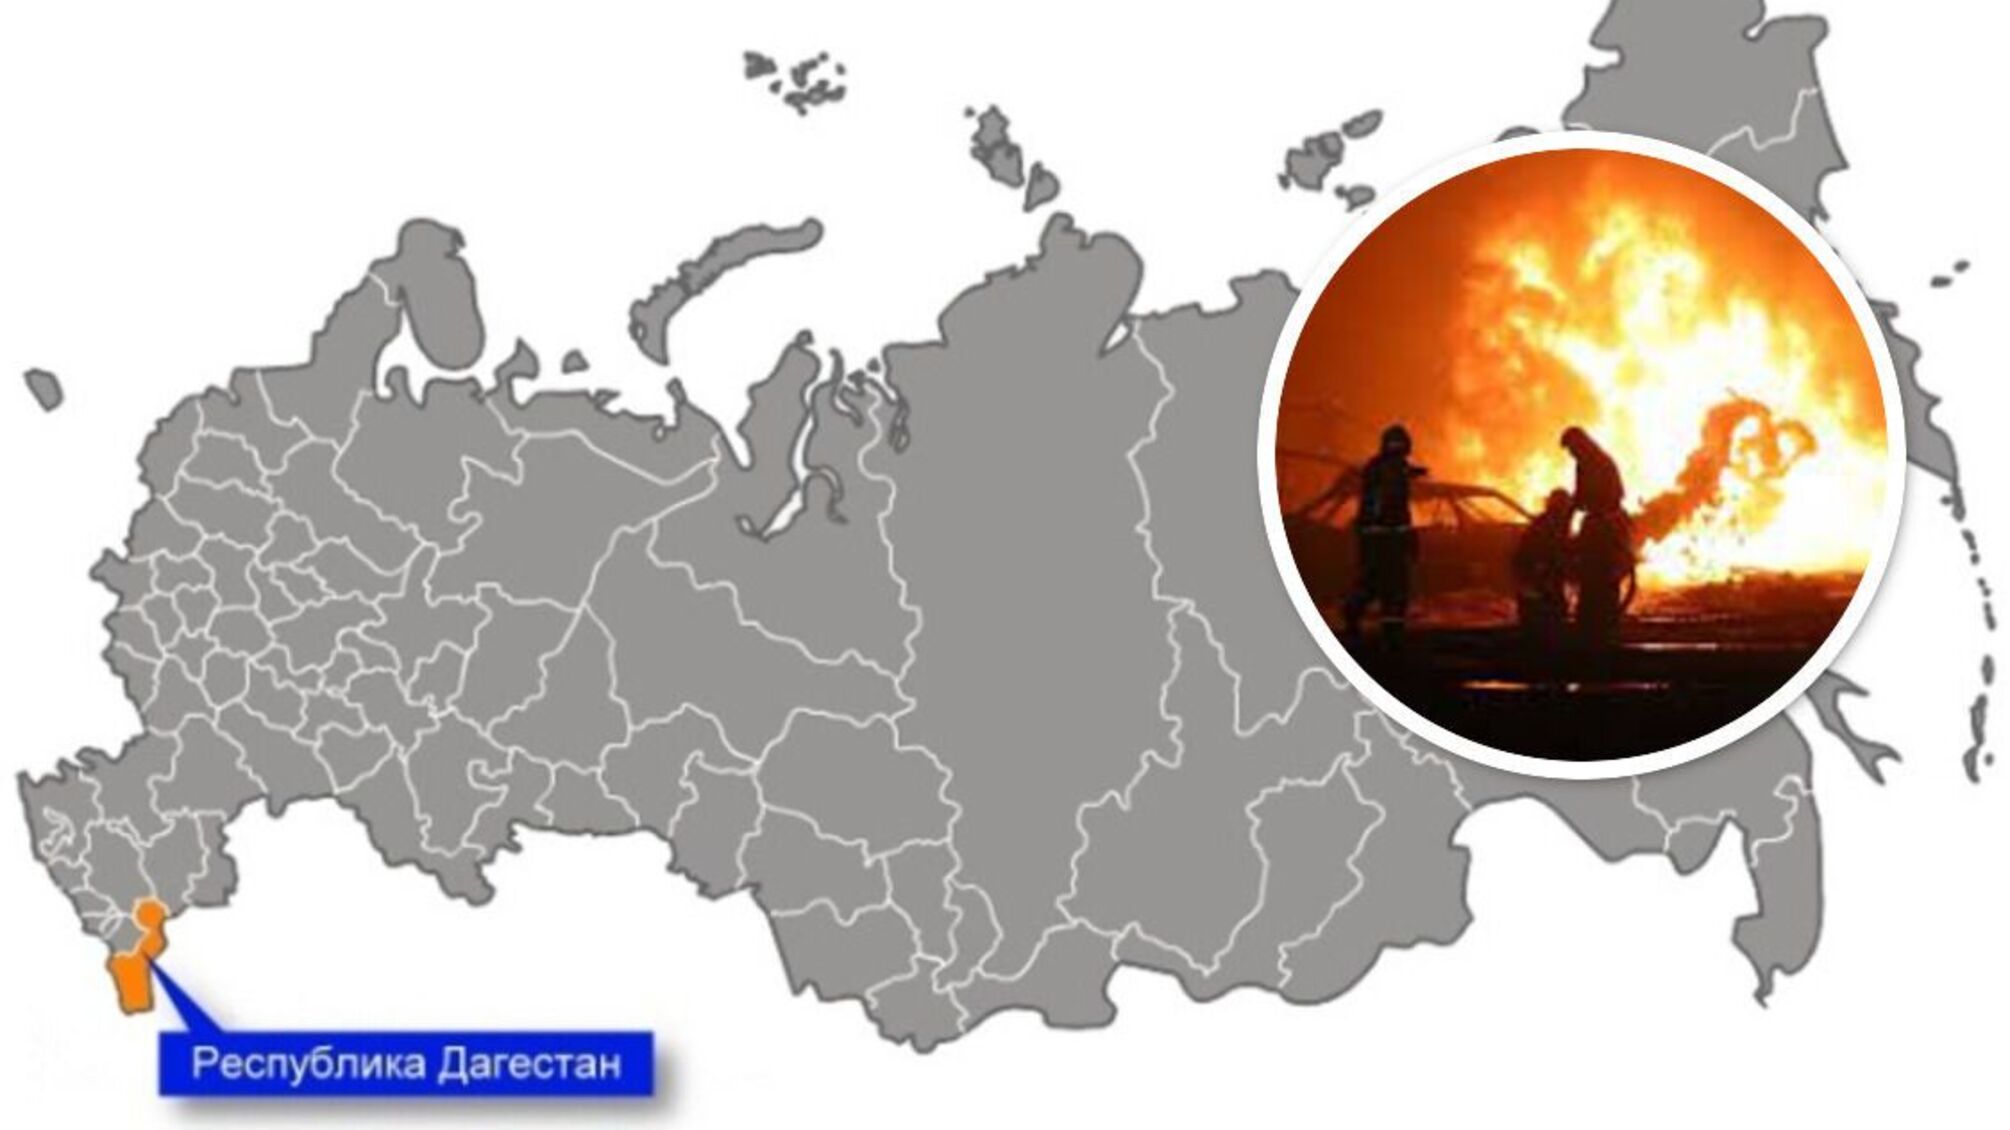 Здригнулось усе місто: у російському Дагестані вибухнула паливна станція